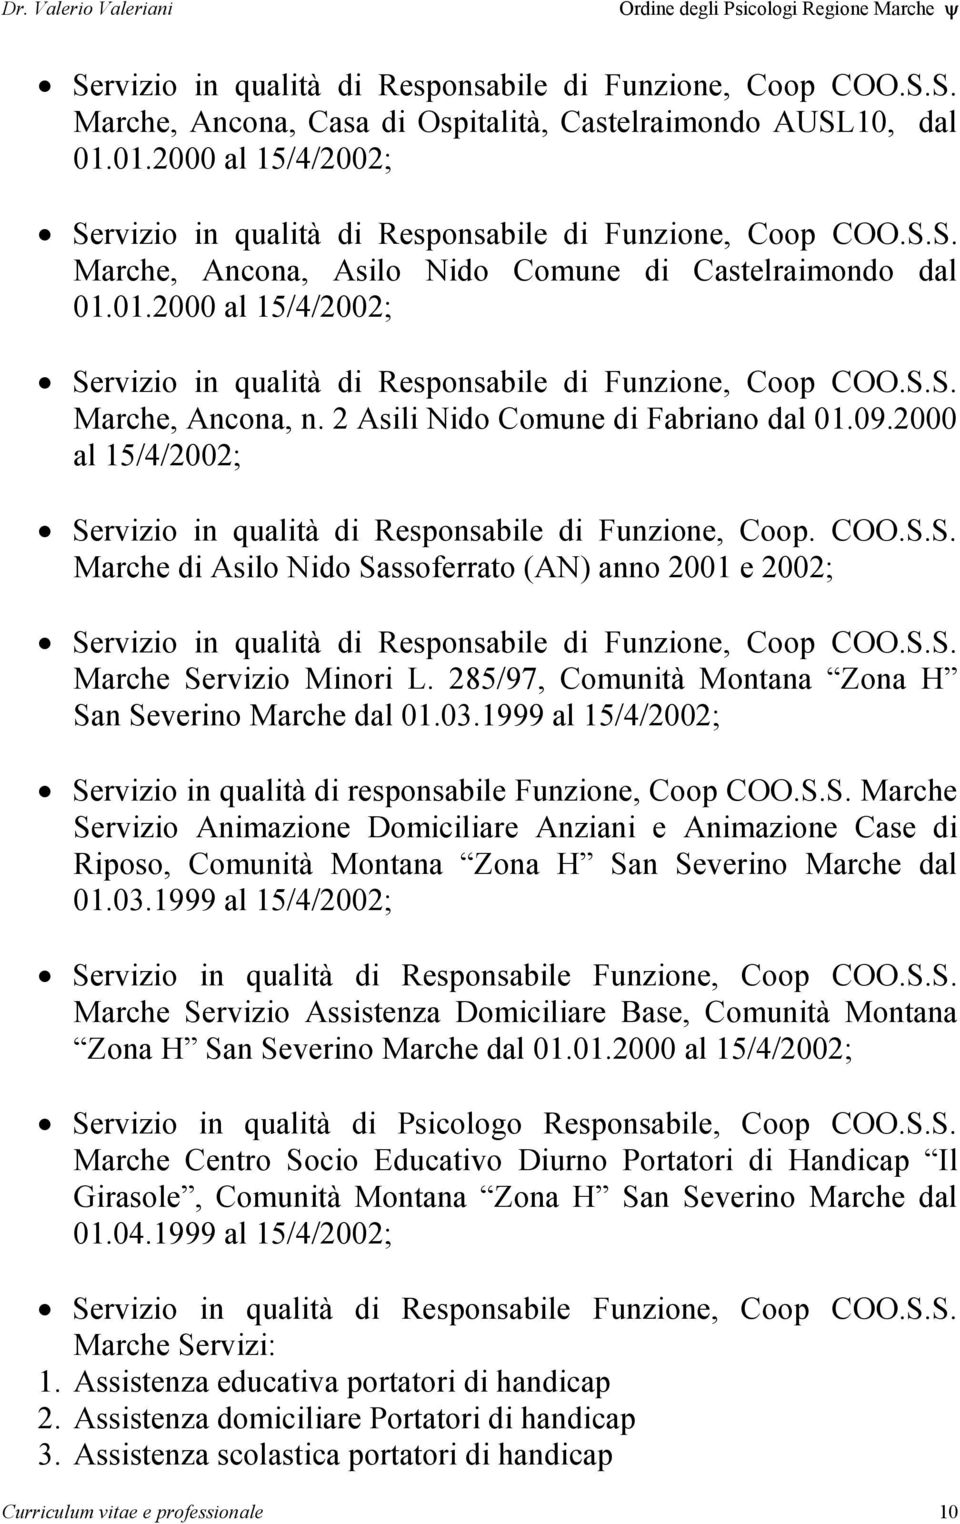 2 Asili Nido Comune di Fabriano dal 01.09.2000 al 15/4/2002; Servizio in qualità di Responsabile di Funzione, Coop. COO.S.S. Marche di Asilo Nido Sassoferrato (AN) anno 2001 e 2002; Servizio in qualità di Responsabile di Funzione, Coop COO.